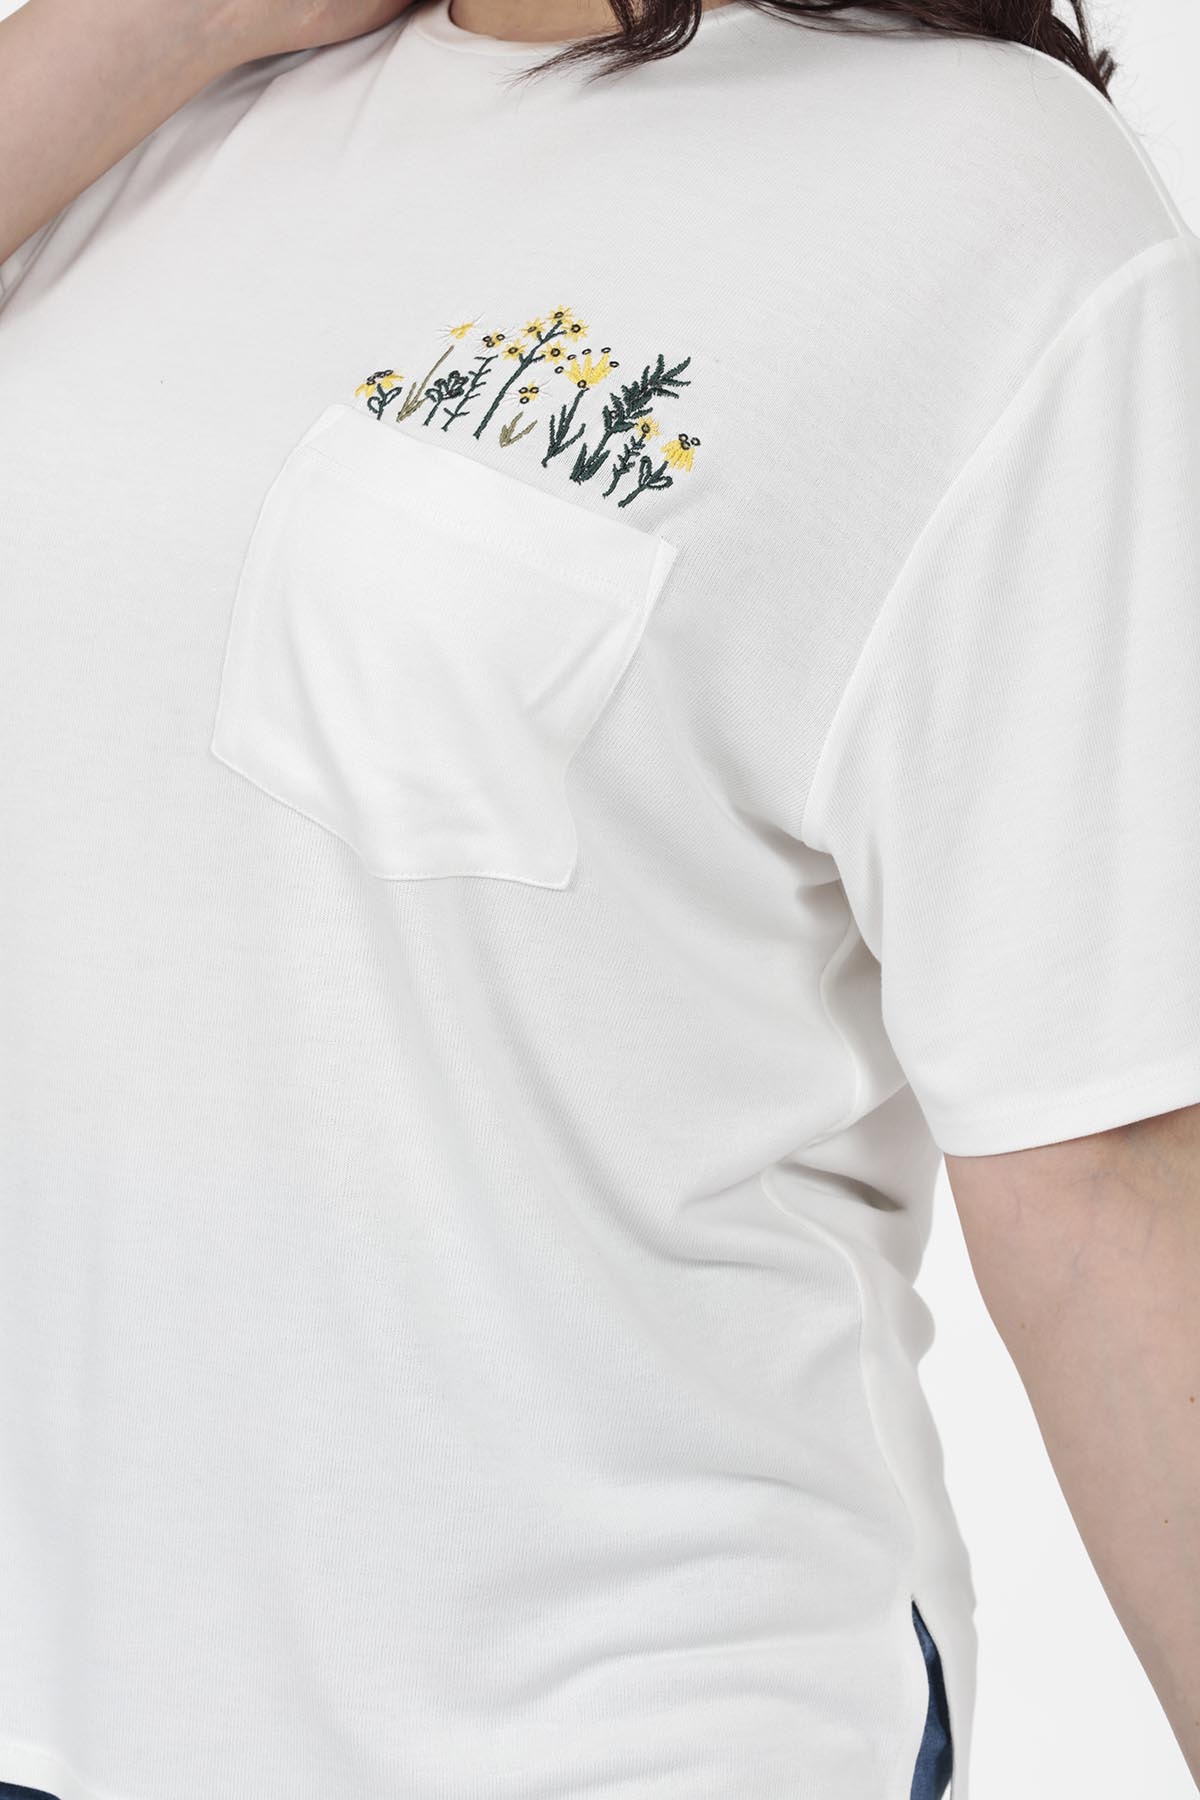 Cep Çiçek Detaylı T-shirt - Thumbnail